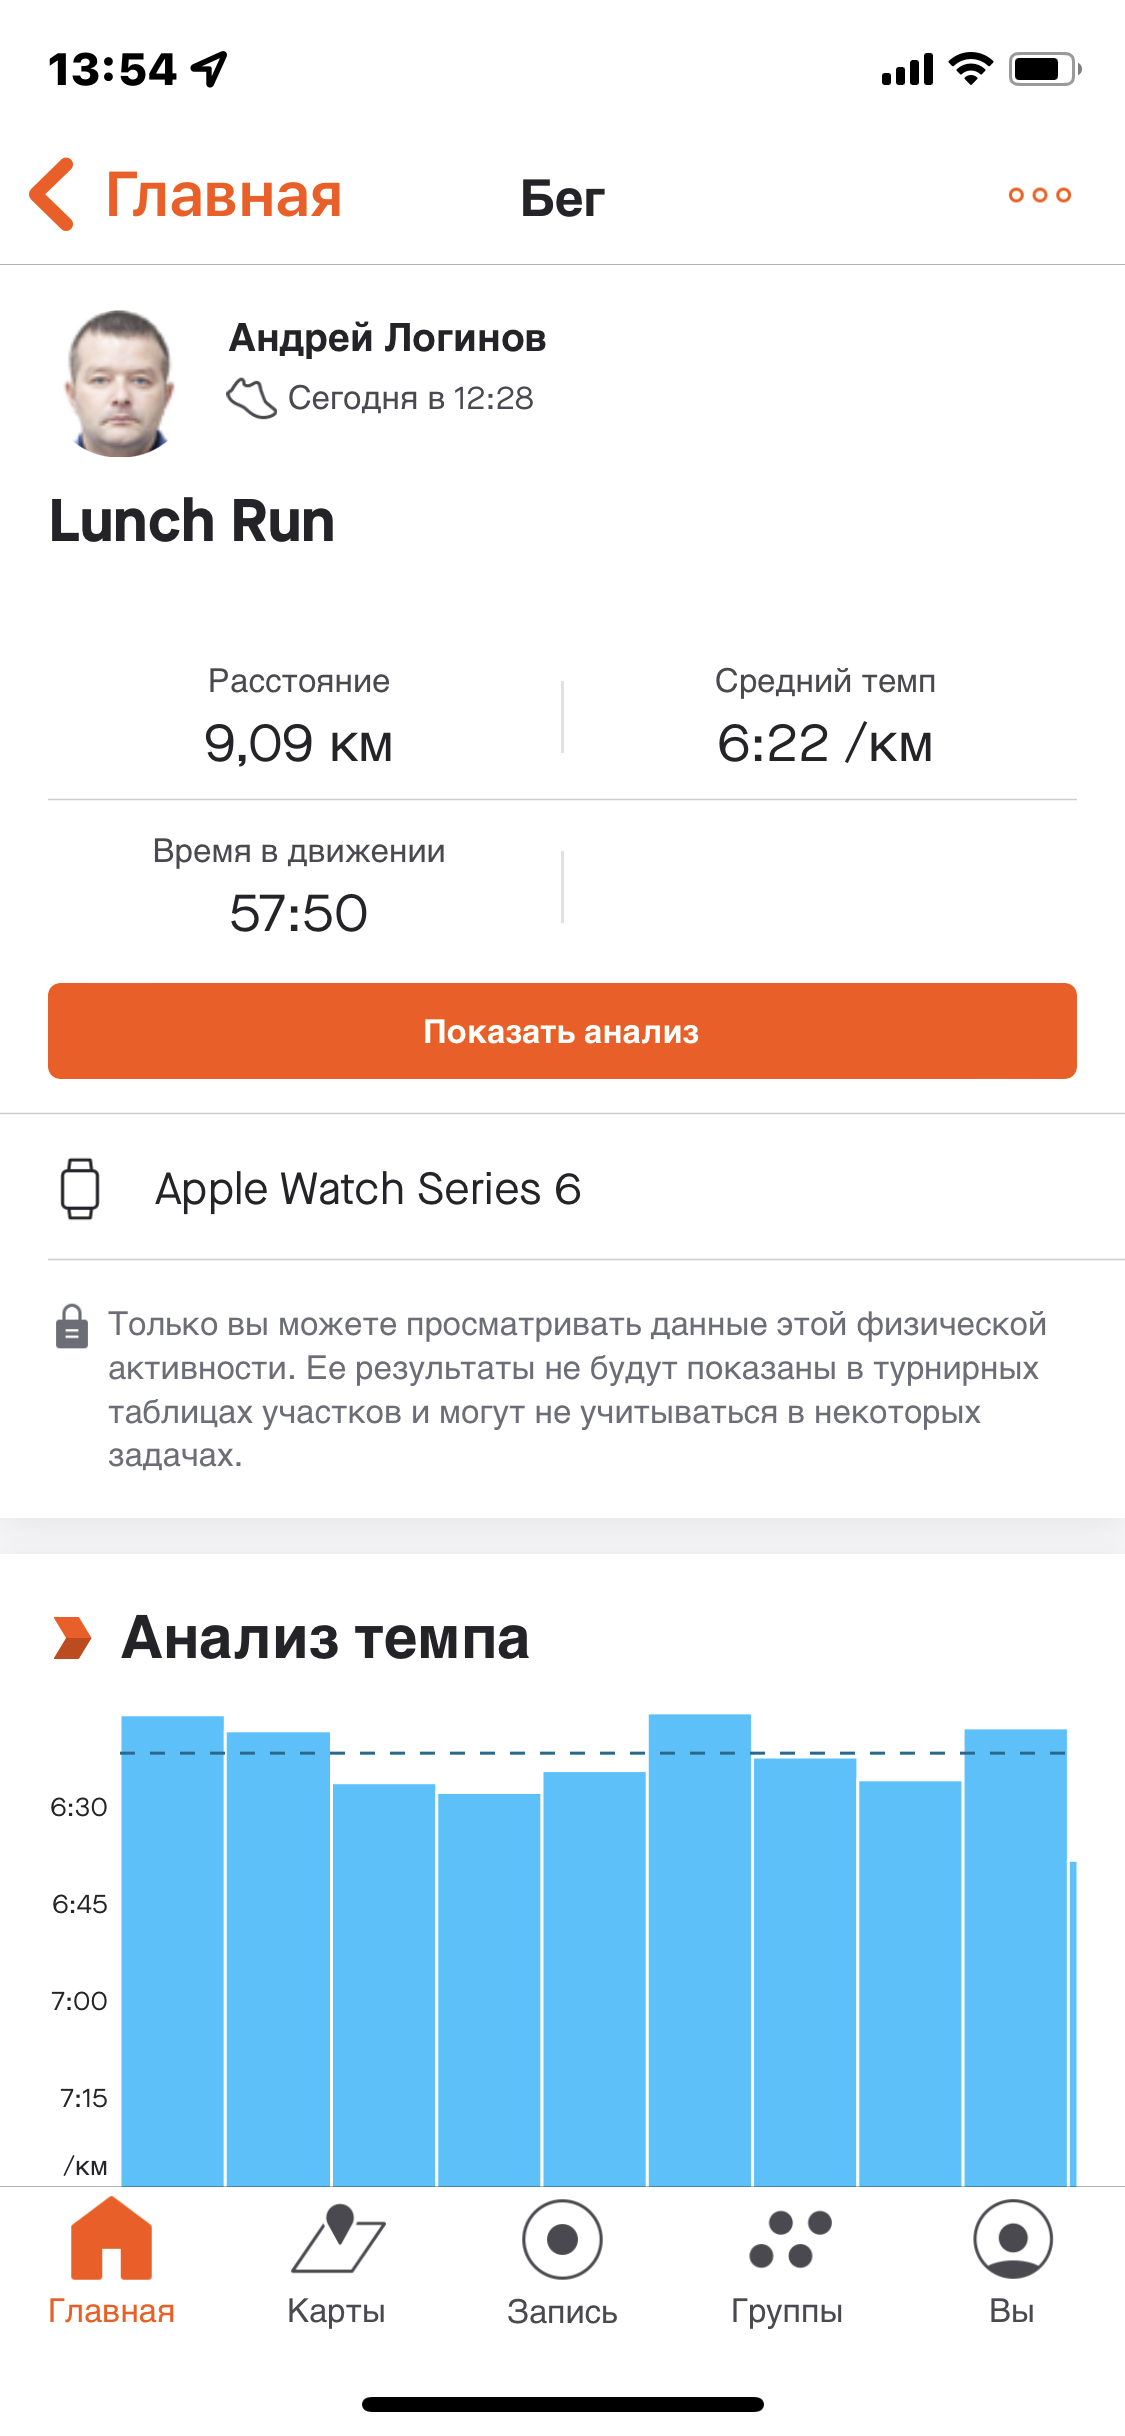  Загрузка от 09.05.2022 00:00:00 Логинов Андрей 